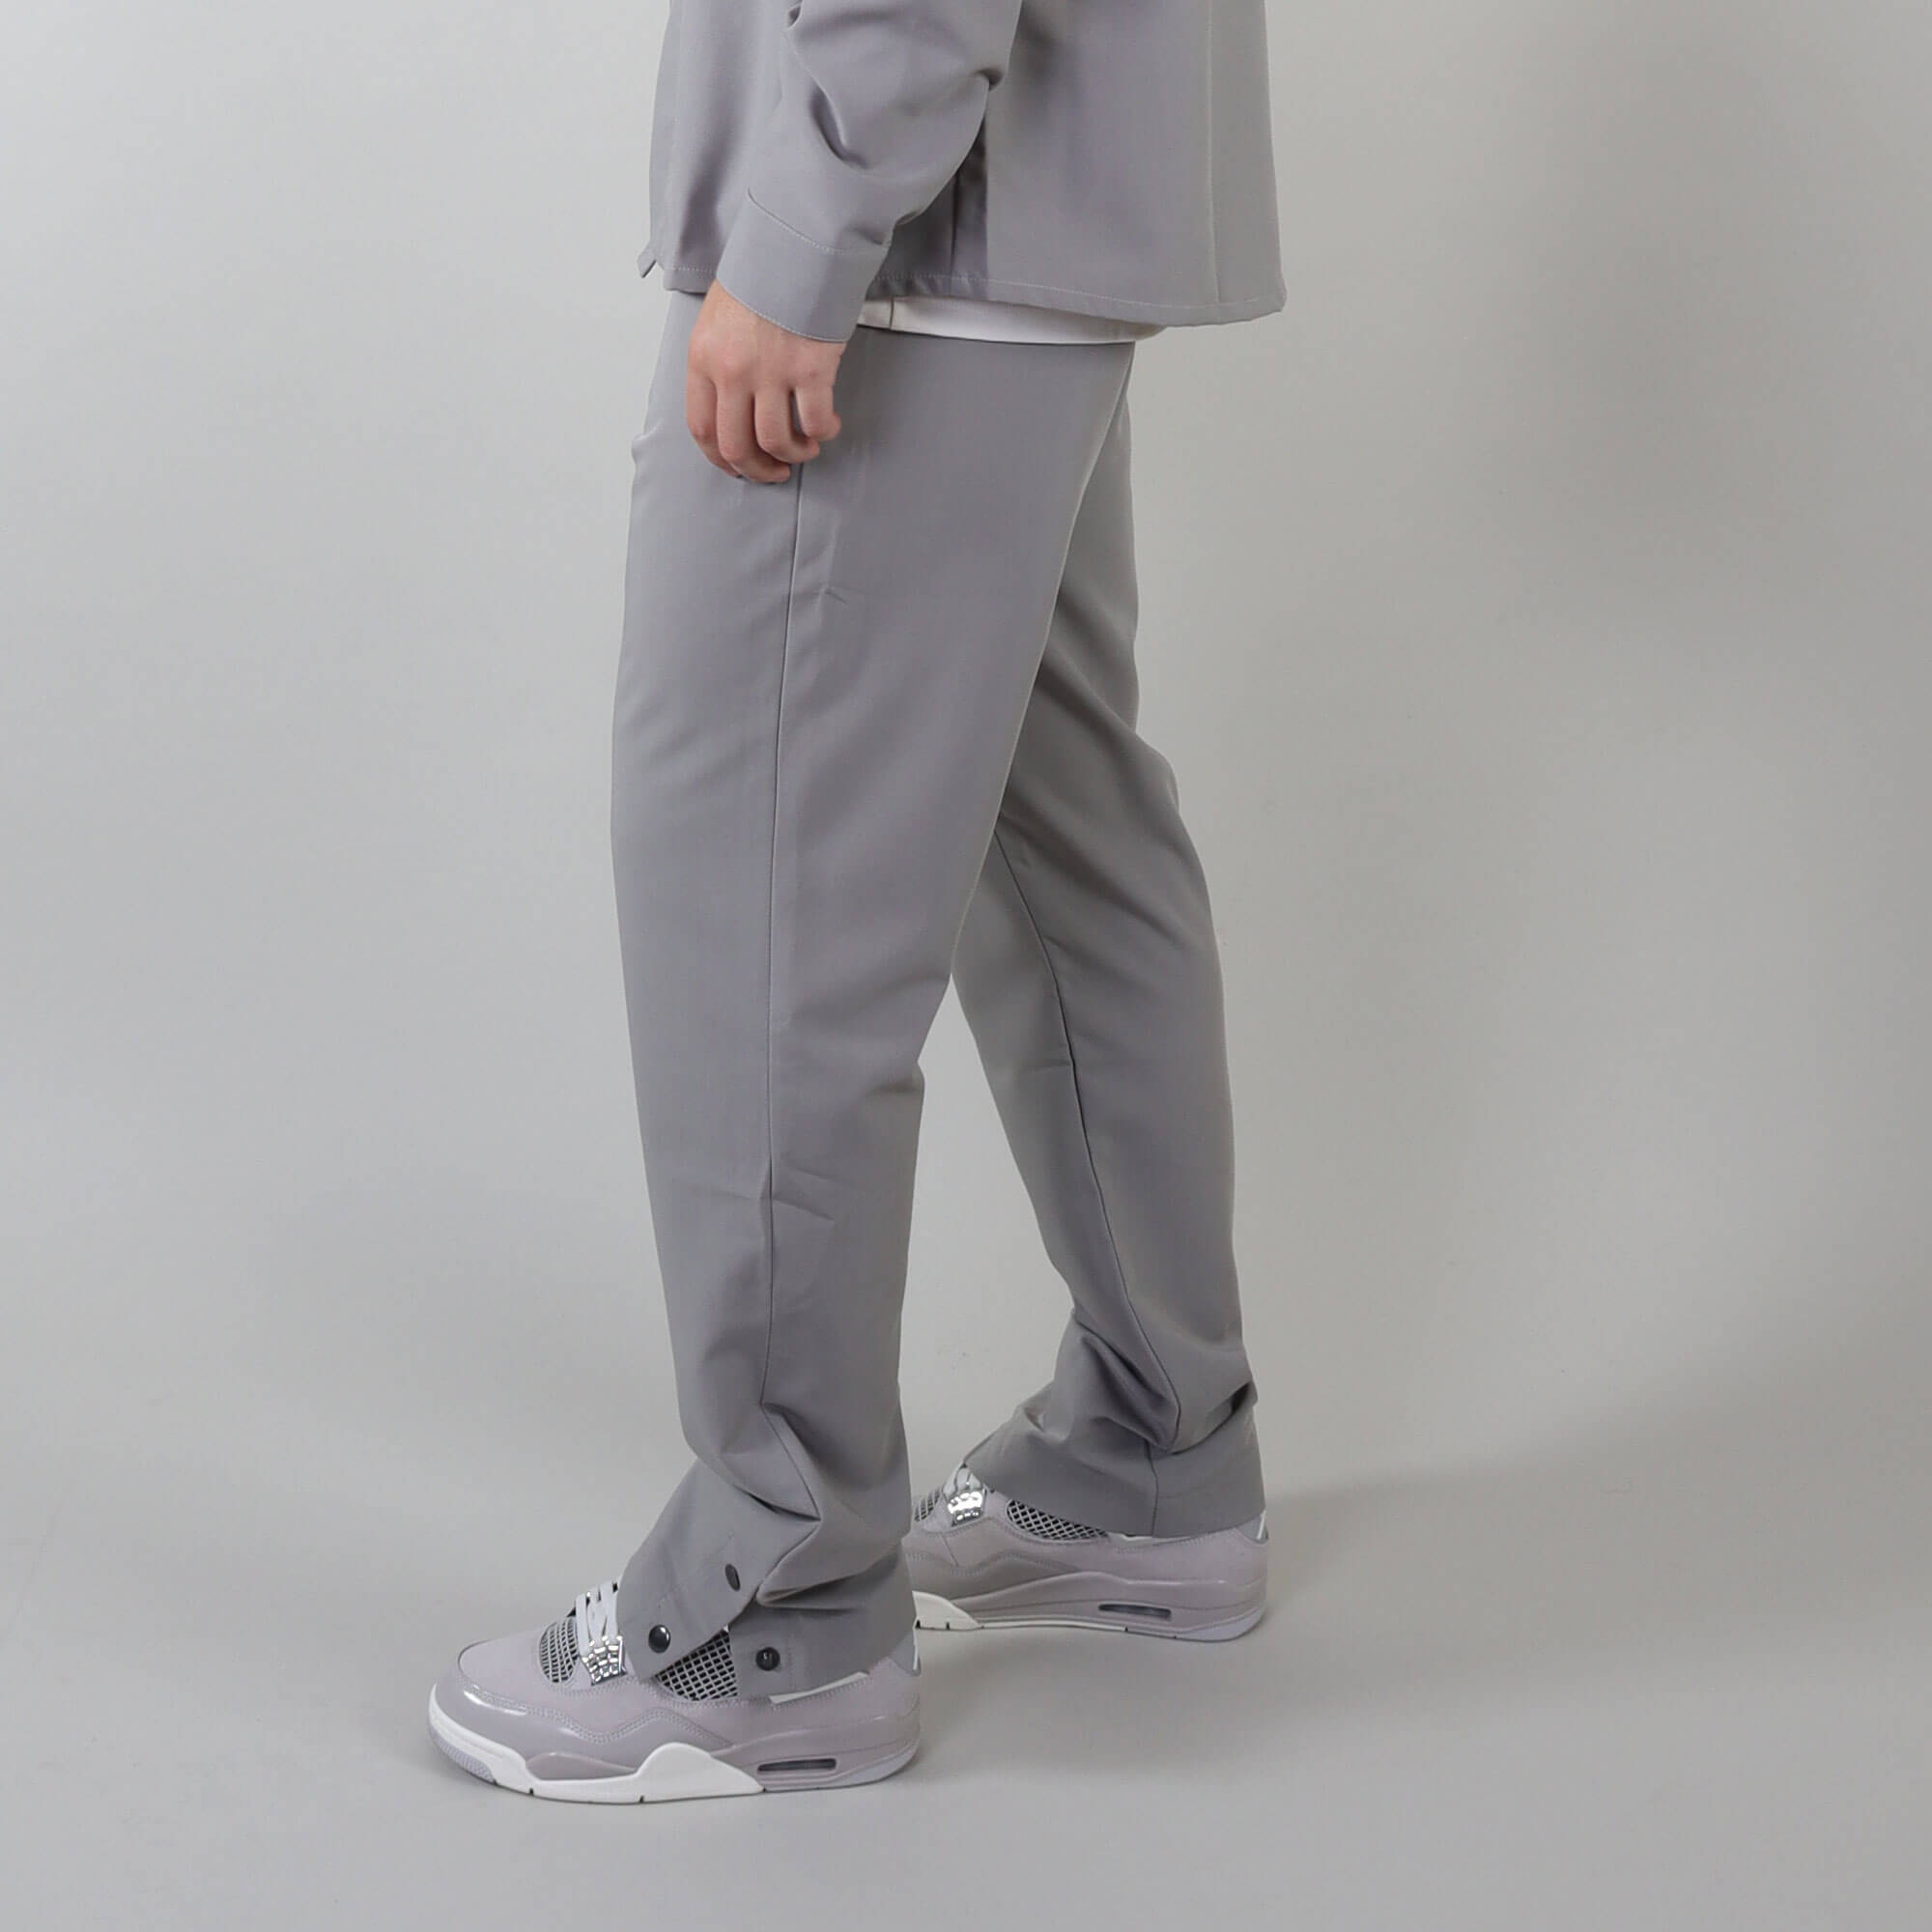 PRJCT button pants grey